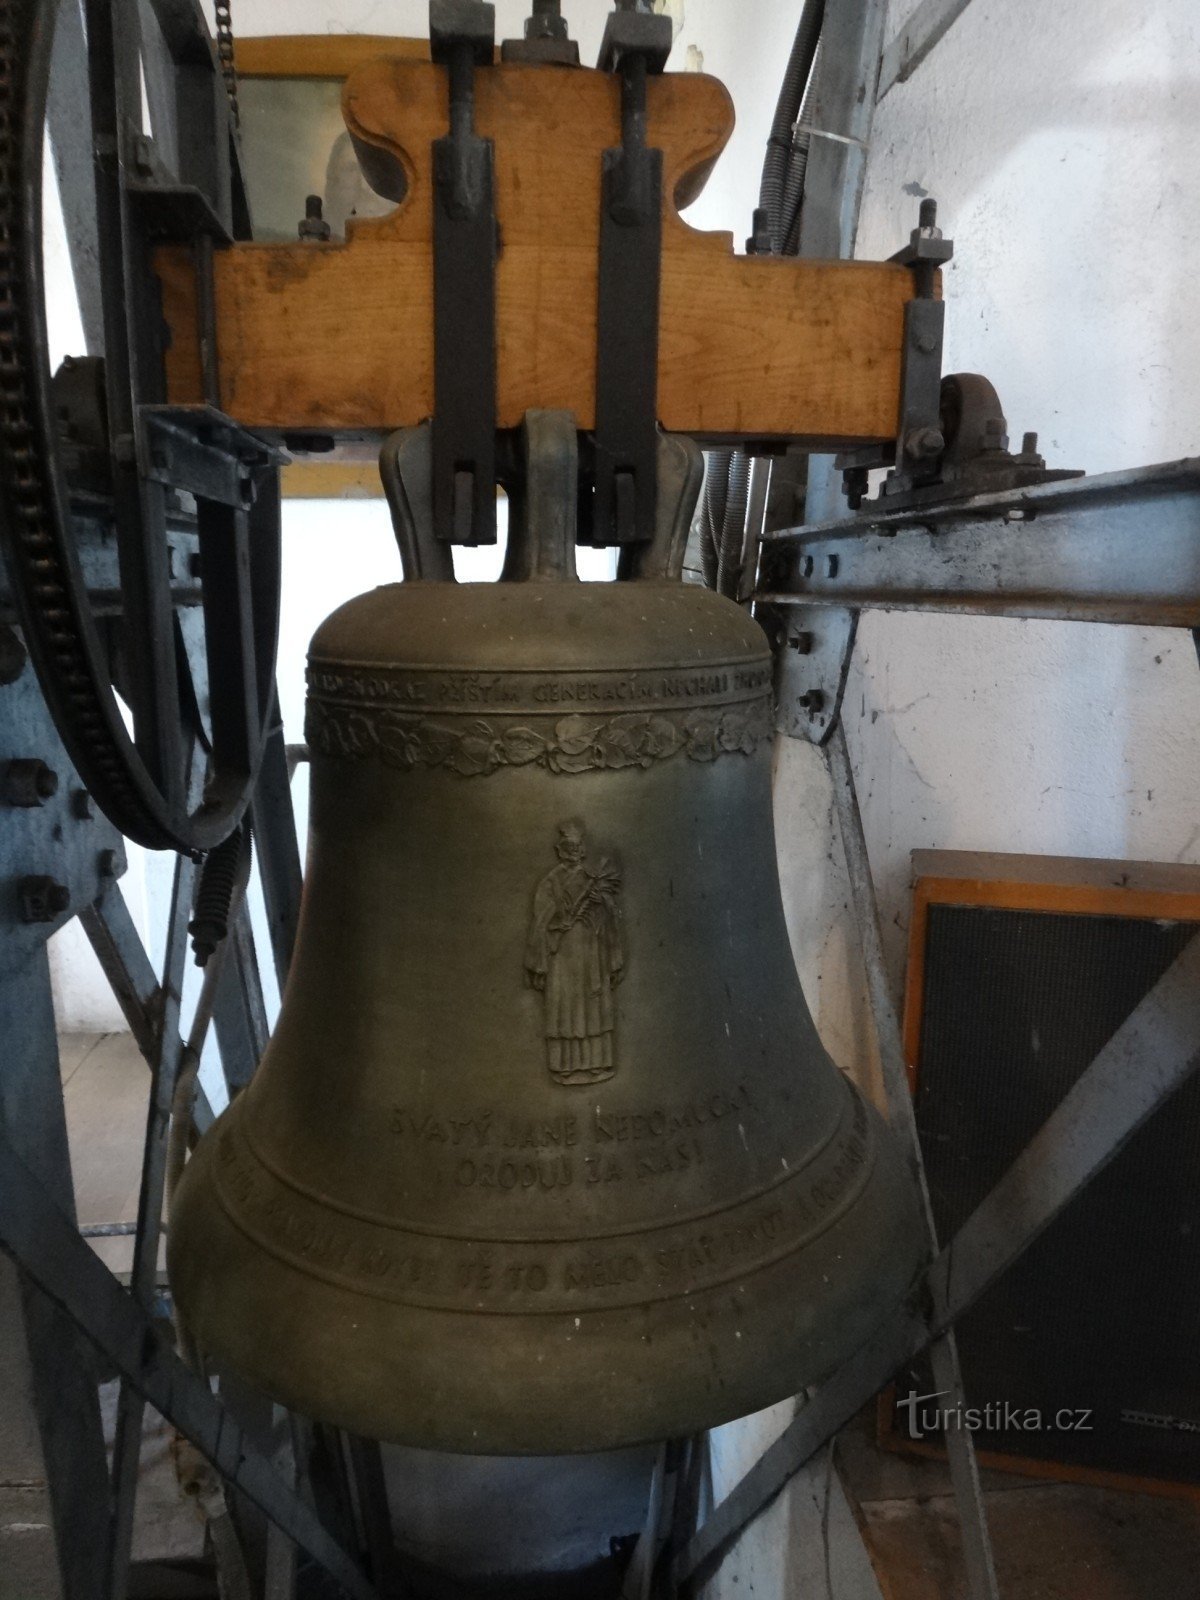 the bell of St. John of Nepomuk